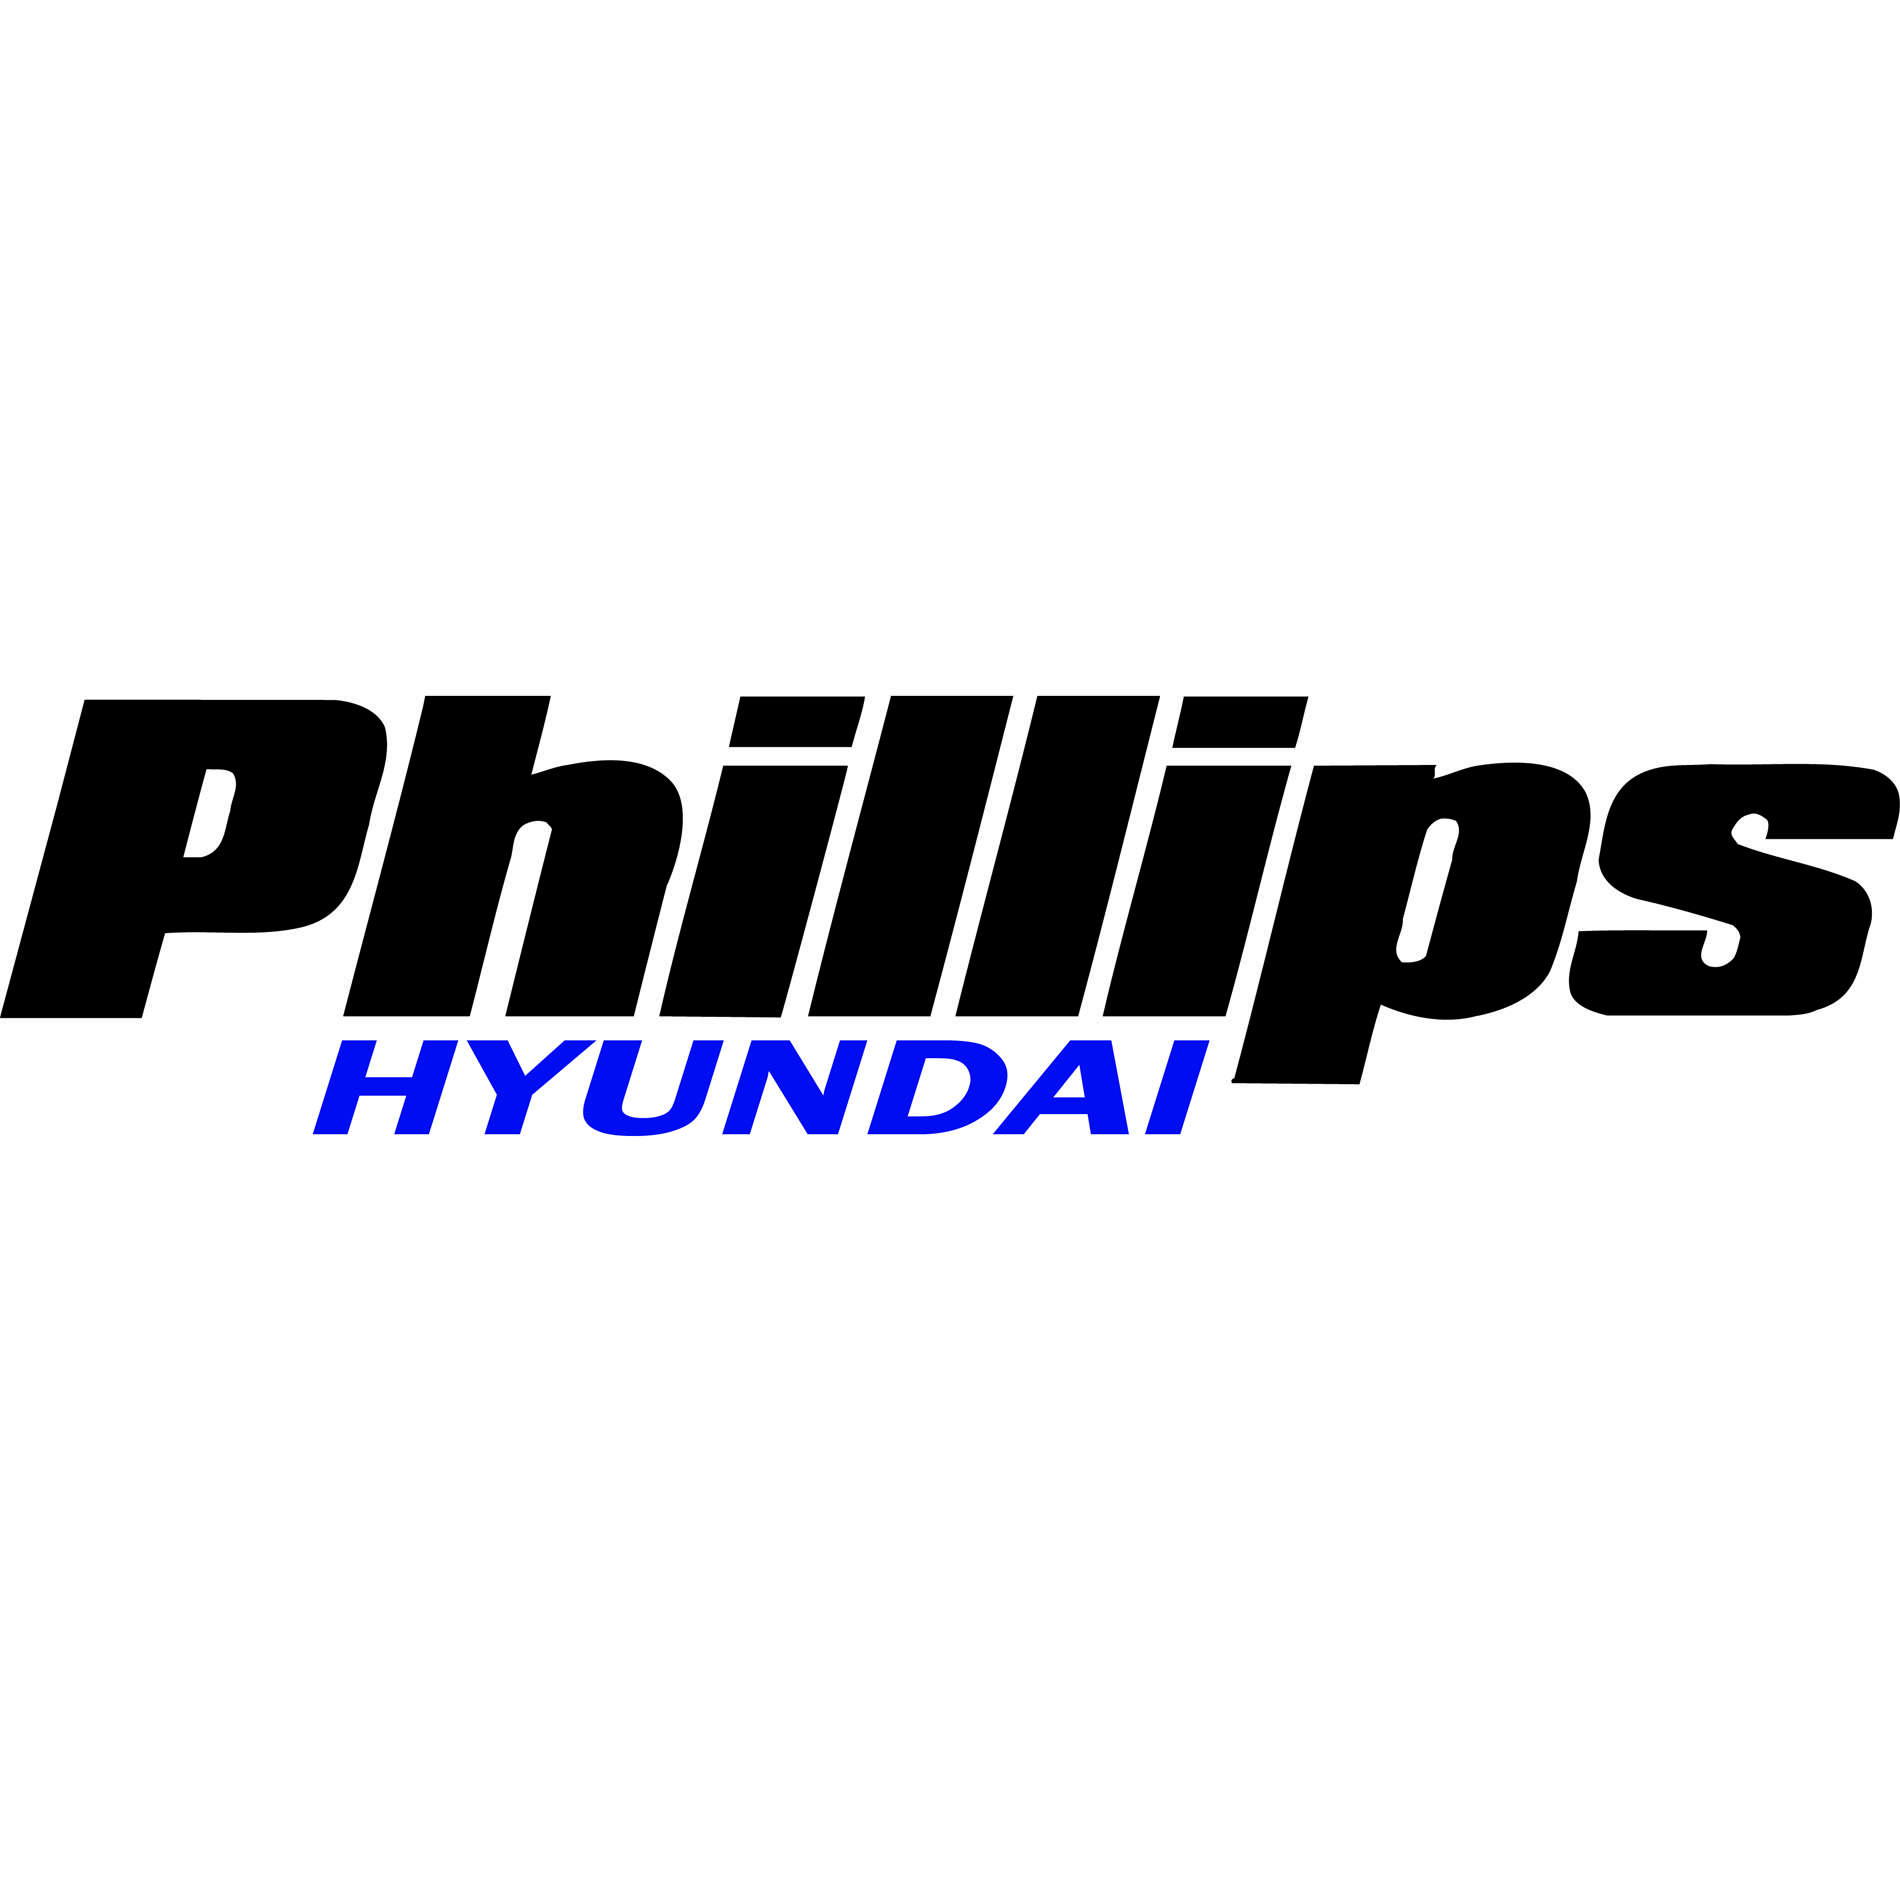 Phillips Hyundai of Bradley, LLC Logo